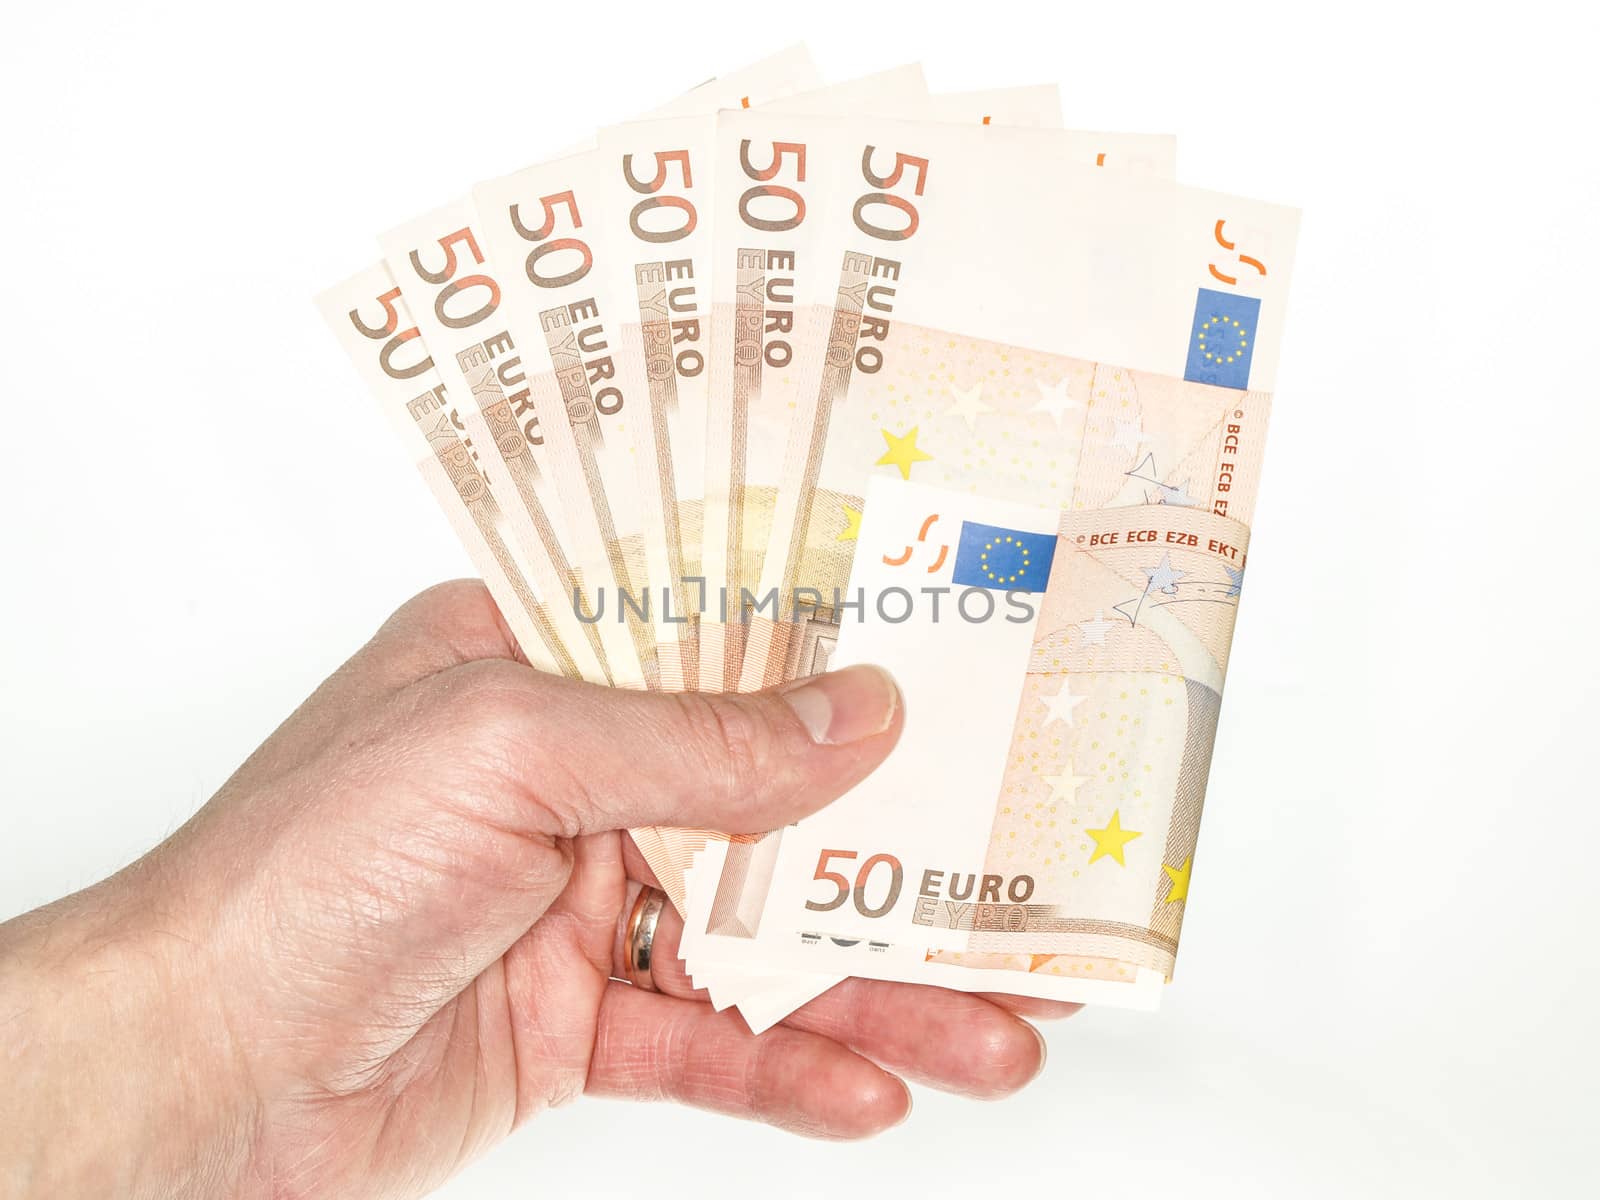 50 Euro bills by Arvebettum